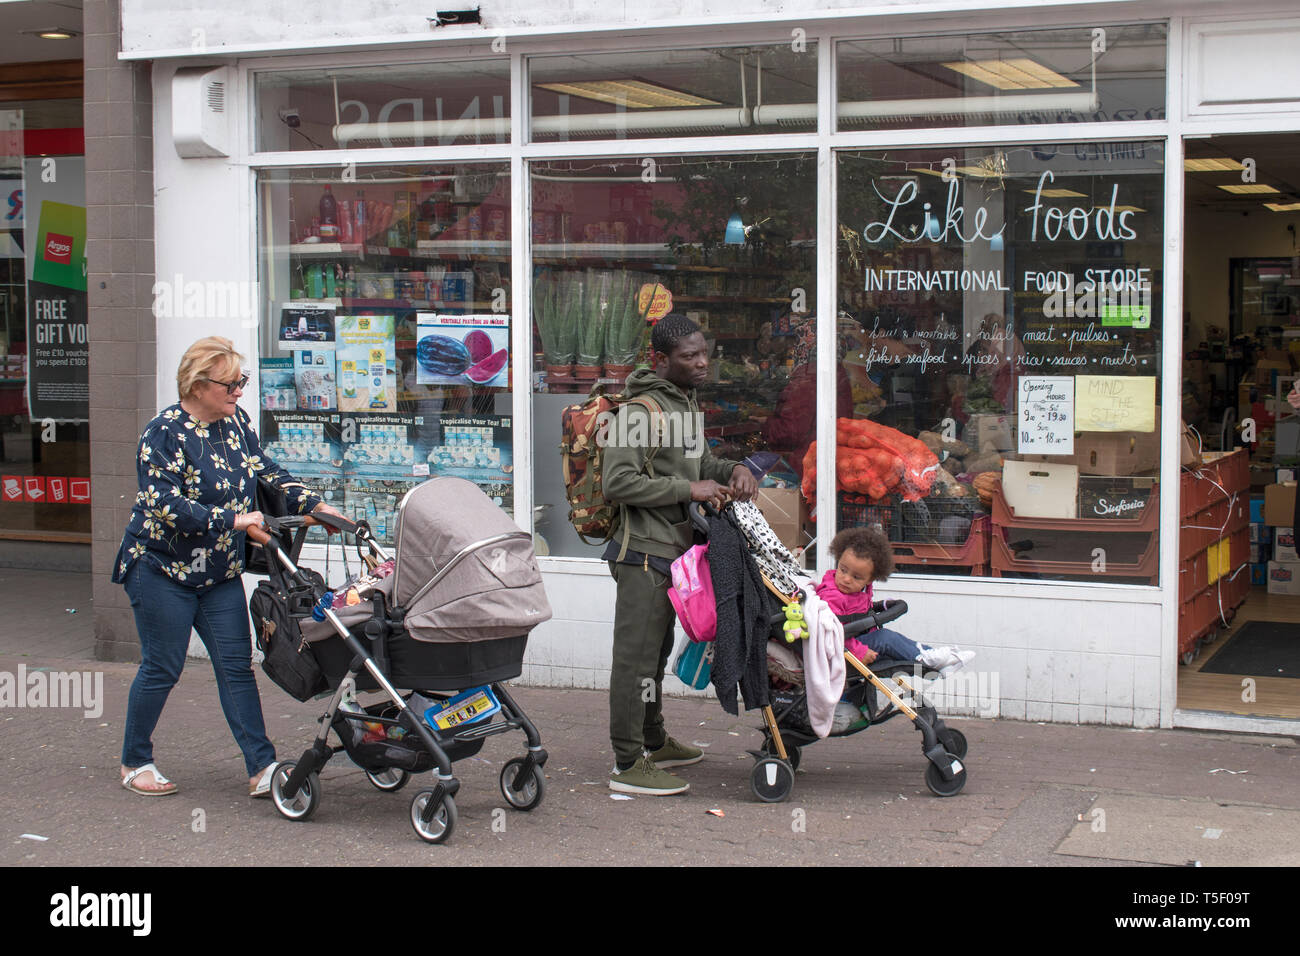 Des gens de la classe ouvrière multiethnique, femme blanche, homme britannique noir avec des enfants dans des landaus allant faire du shopping à Dartford Kent années 2019 2010 Royaume-Uni HOMER SYKES Banque D'Images